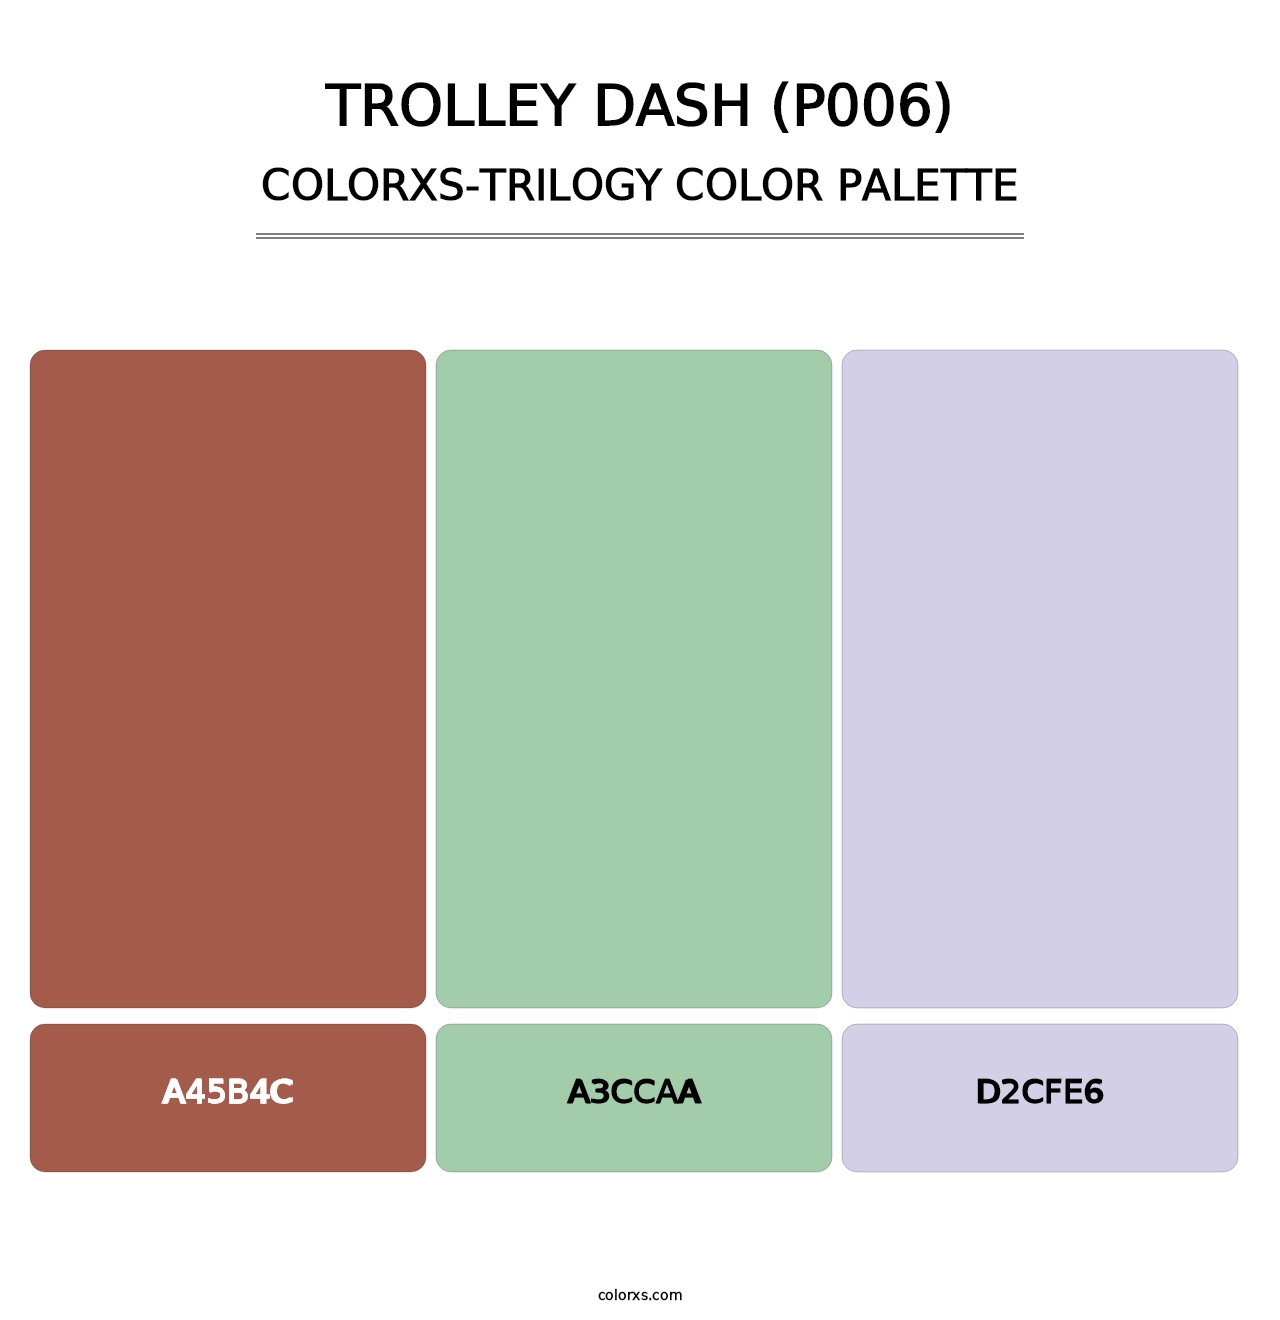 Trolley Dash (P006) - Colorxs Trilogy Palette